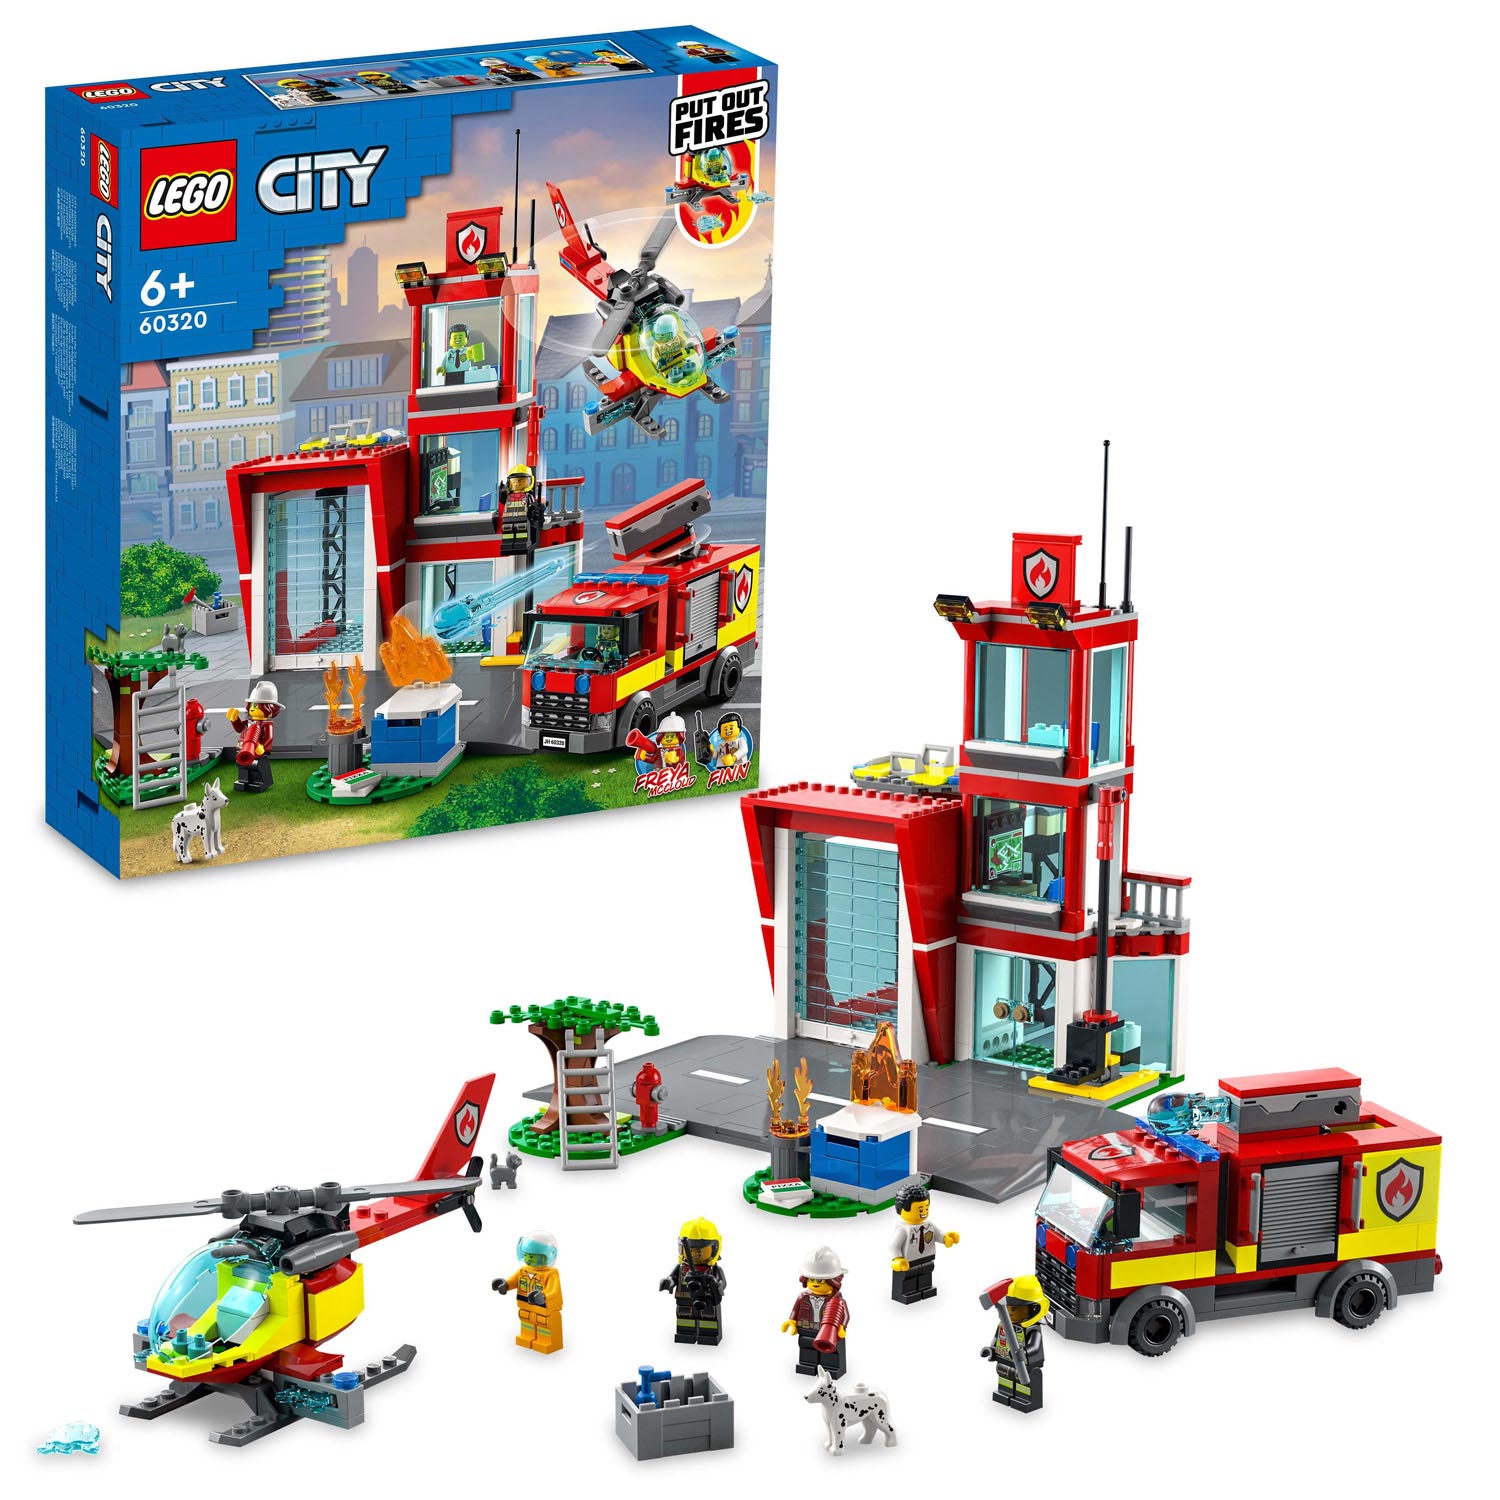 raket Het strand volleybal LEGO City 60320 Brandweerkazerne online kopen? | Lobbes Speelgoed